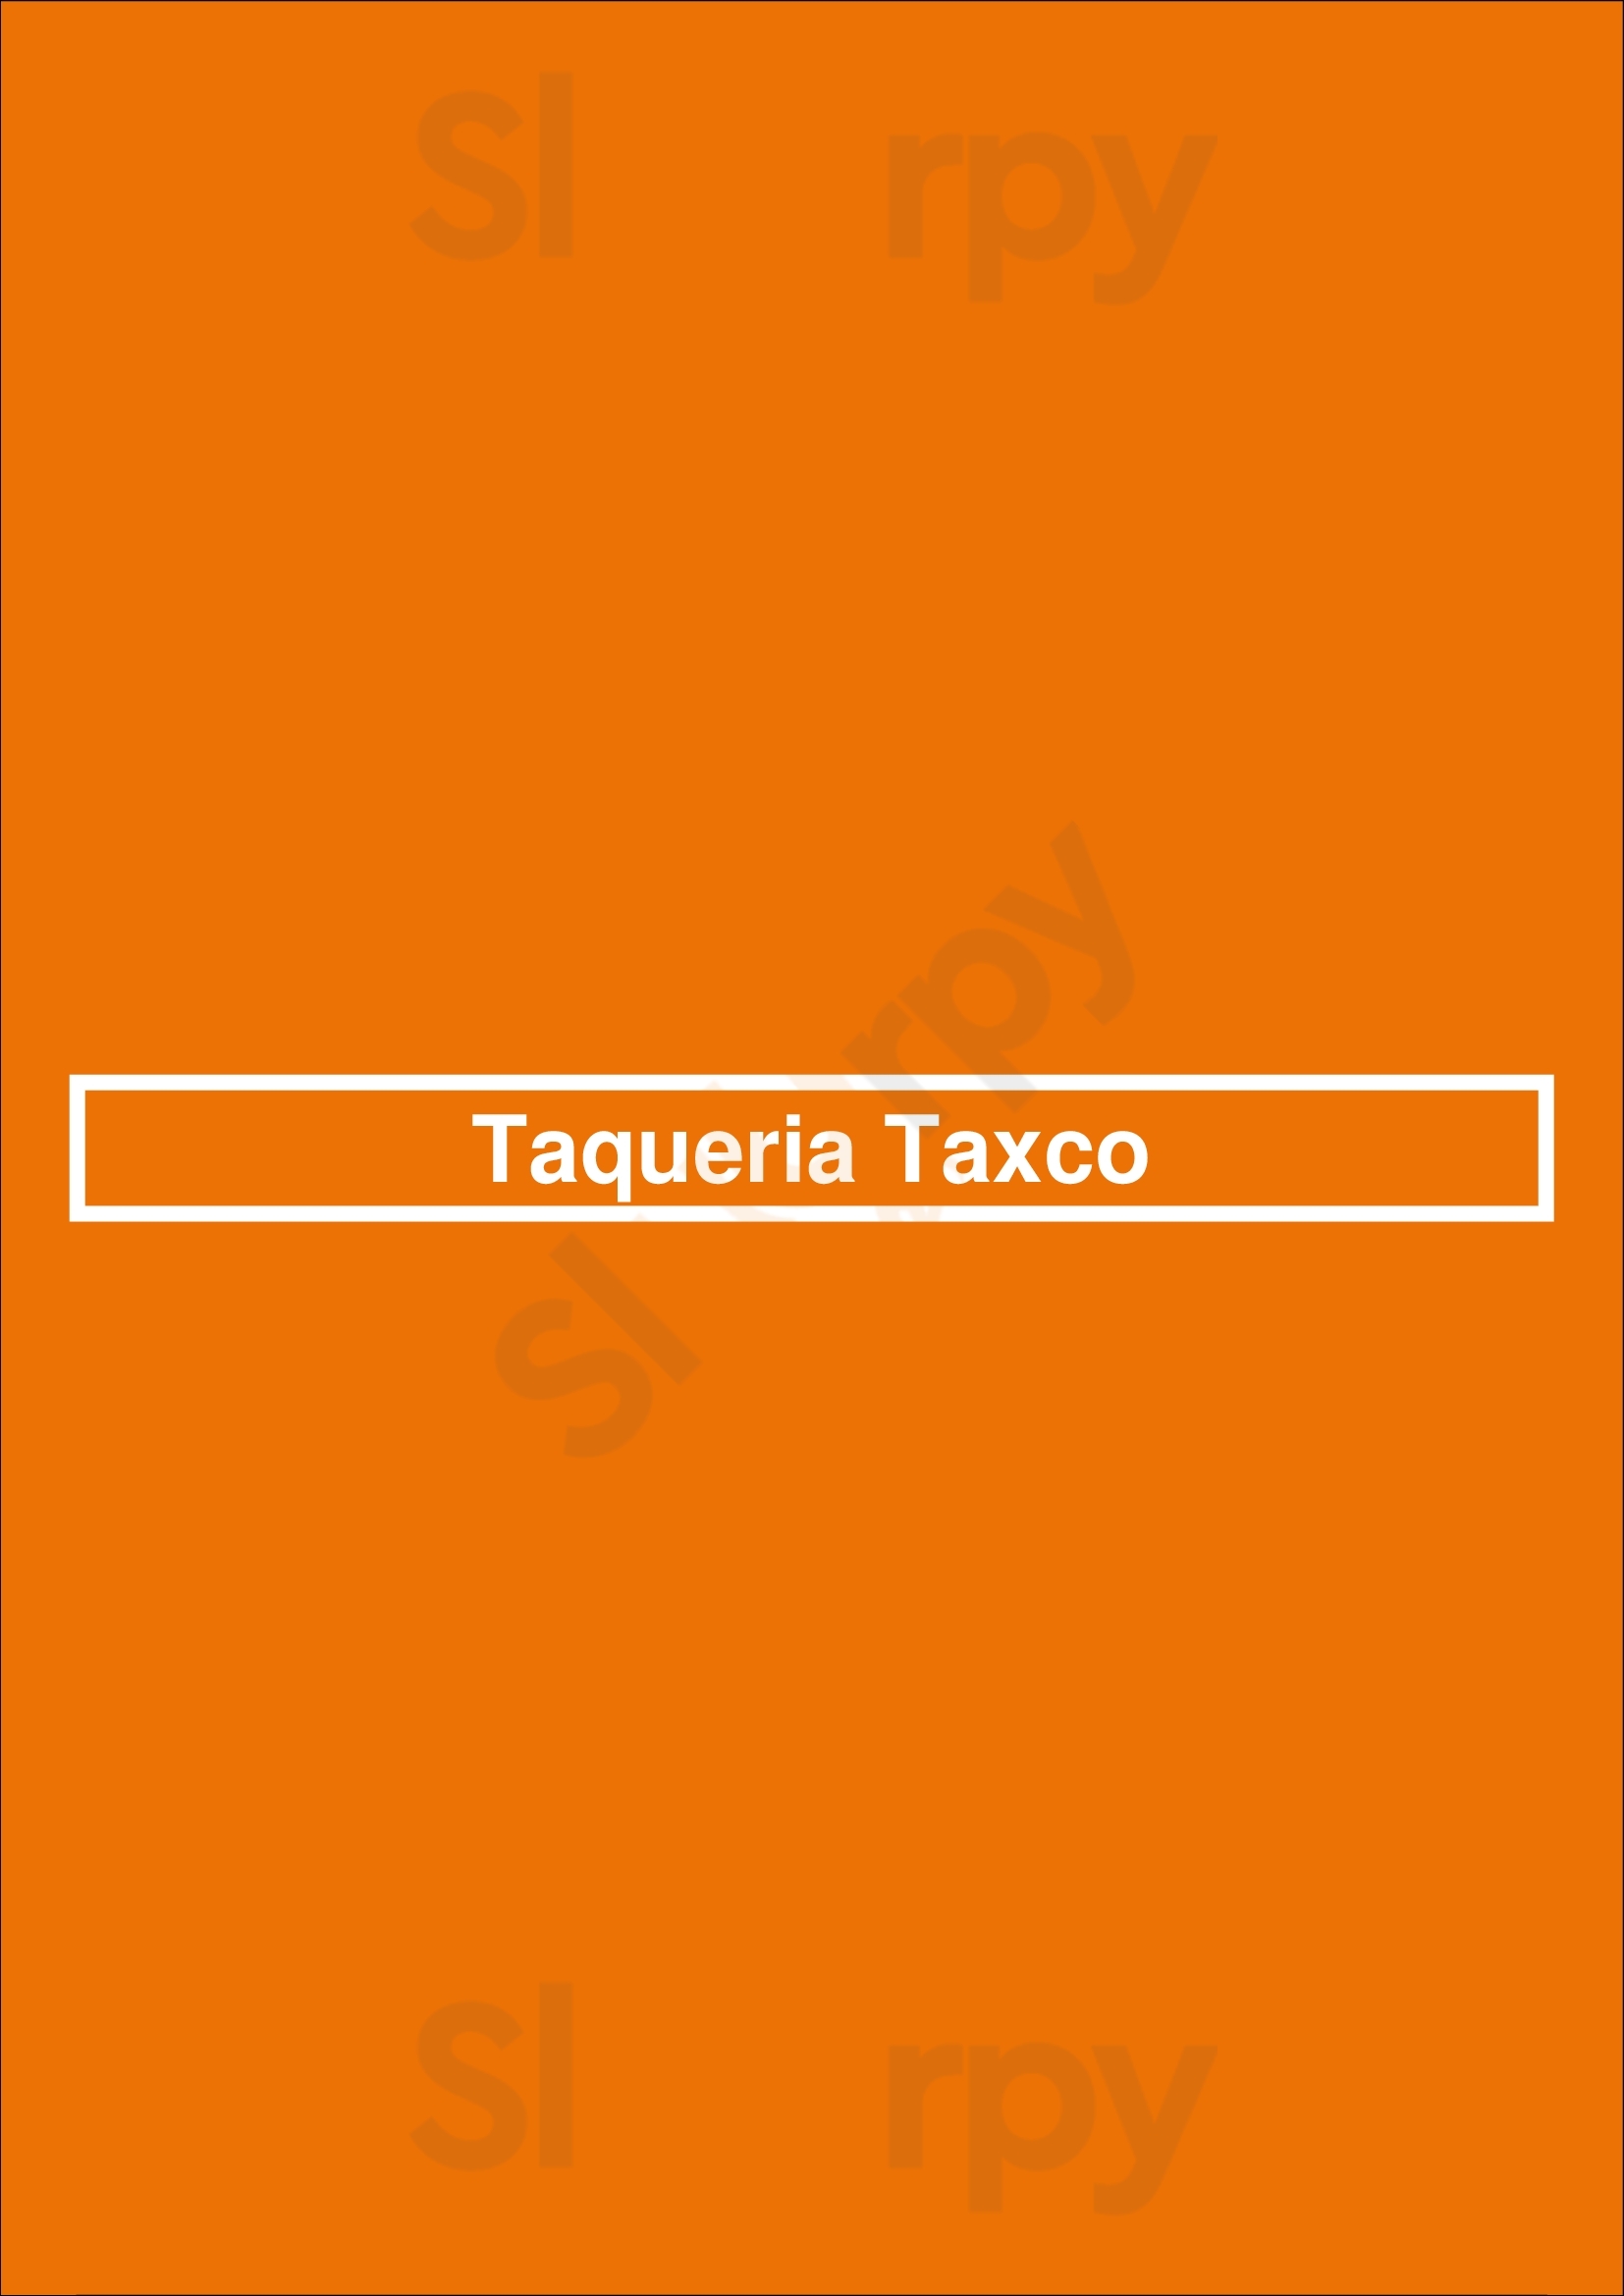 Taqueria Taxco Dallas Menu - 1